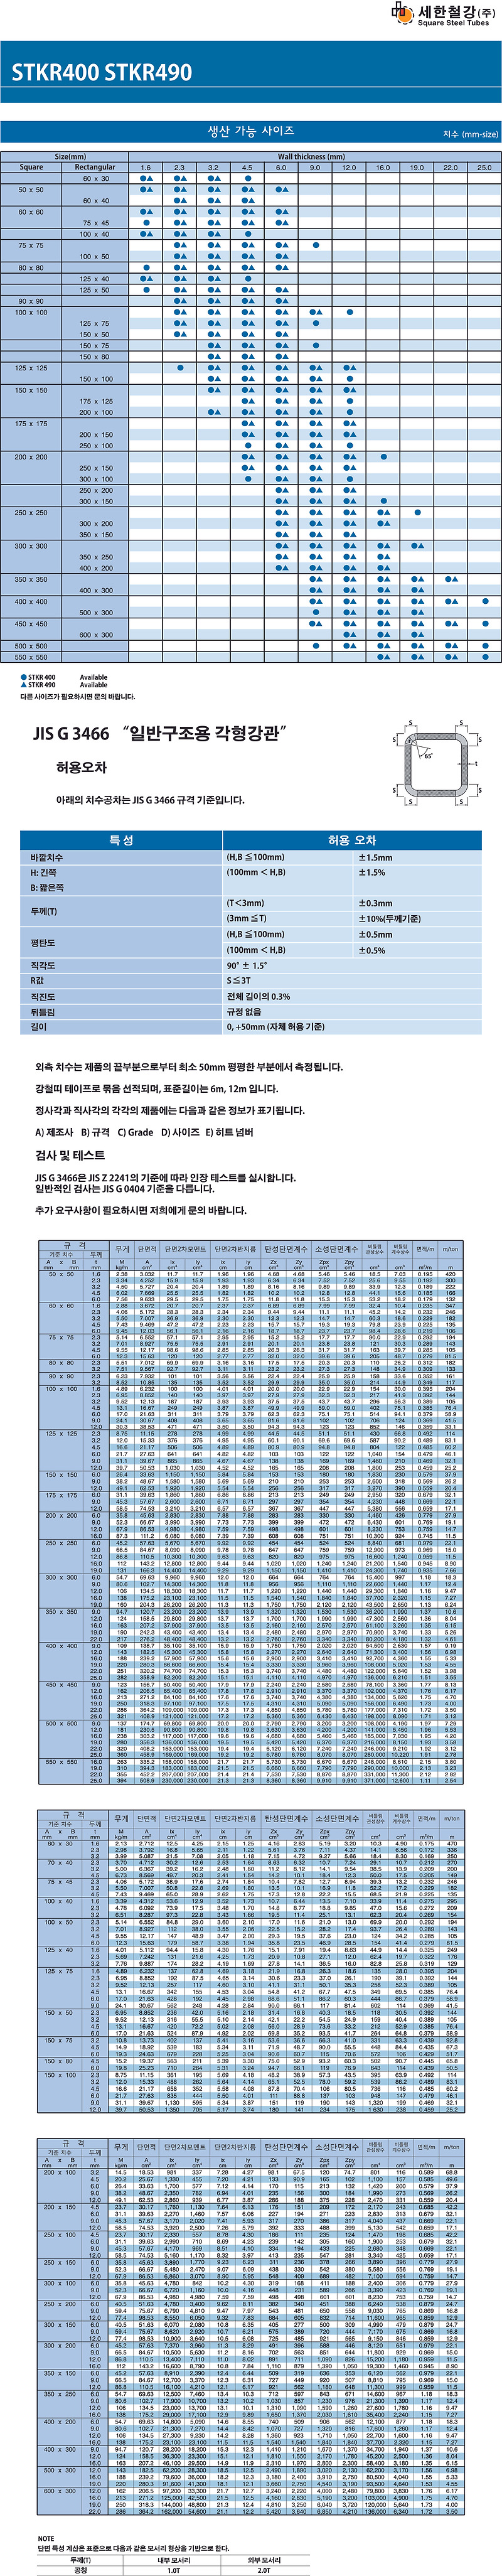 세한철강 일반구조용 각파이프(각관) STKR400,STKR490 (SPSR400, SPSR490, SRT275, SRT355) 각파이프 사이즈표, 중량 및 단면성능표